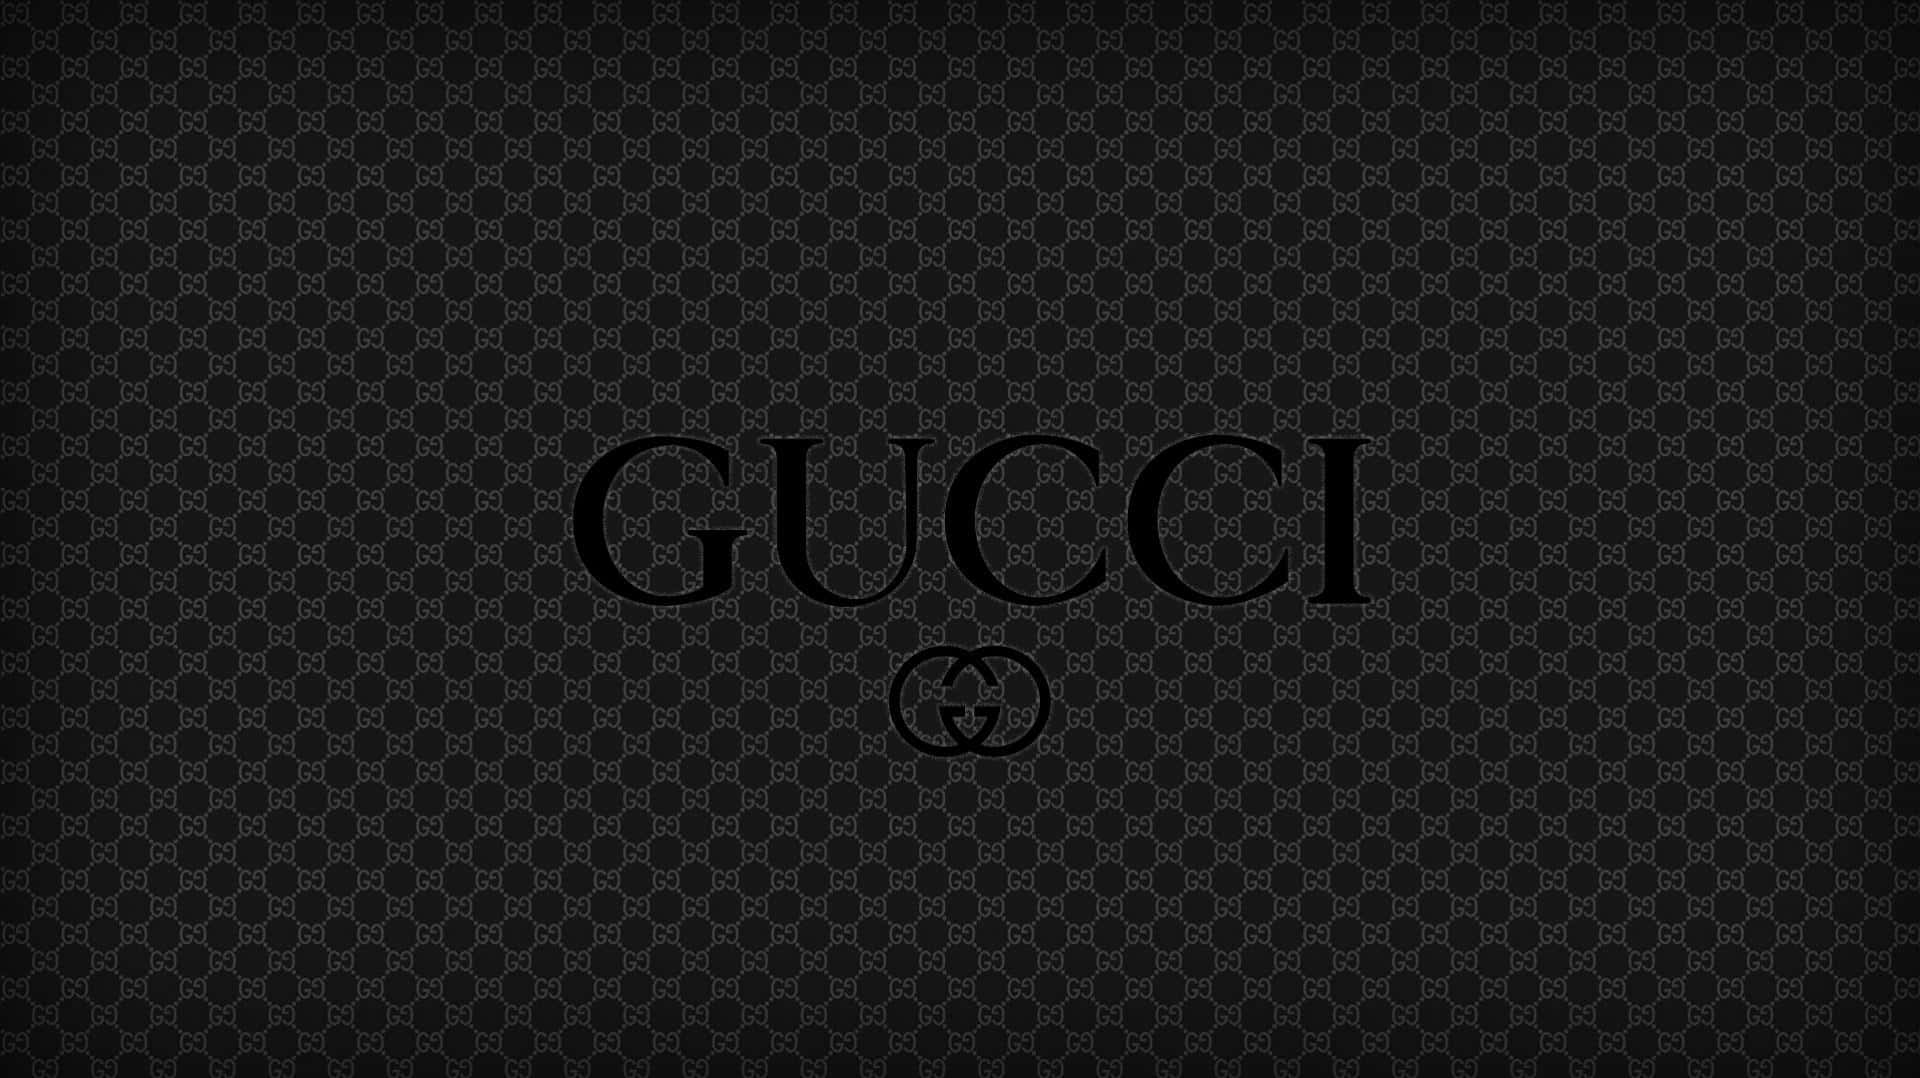 Logocaro De Gucci. Fondo de pantalla